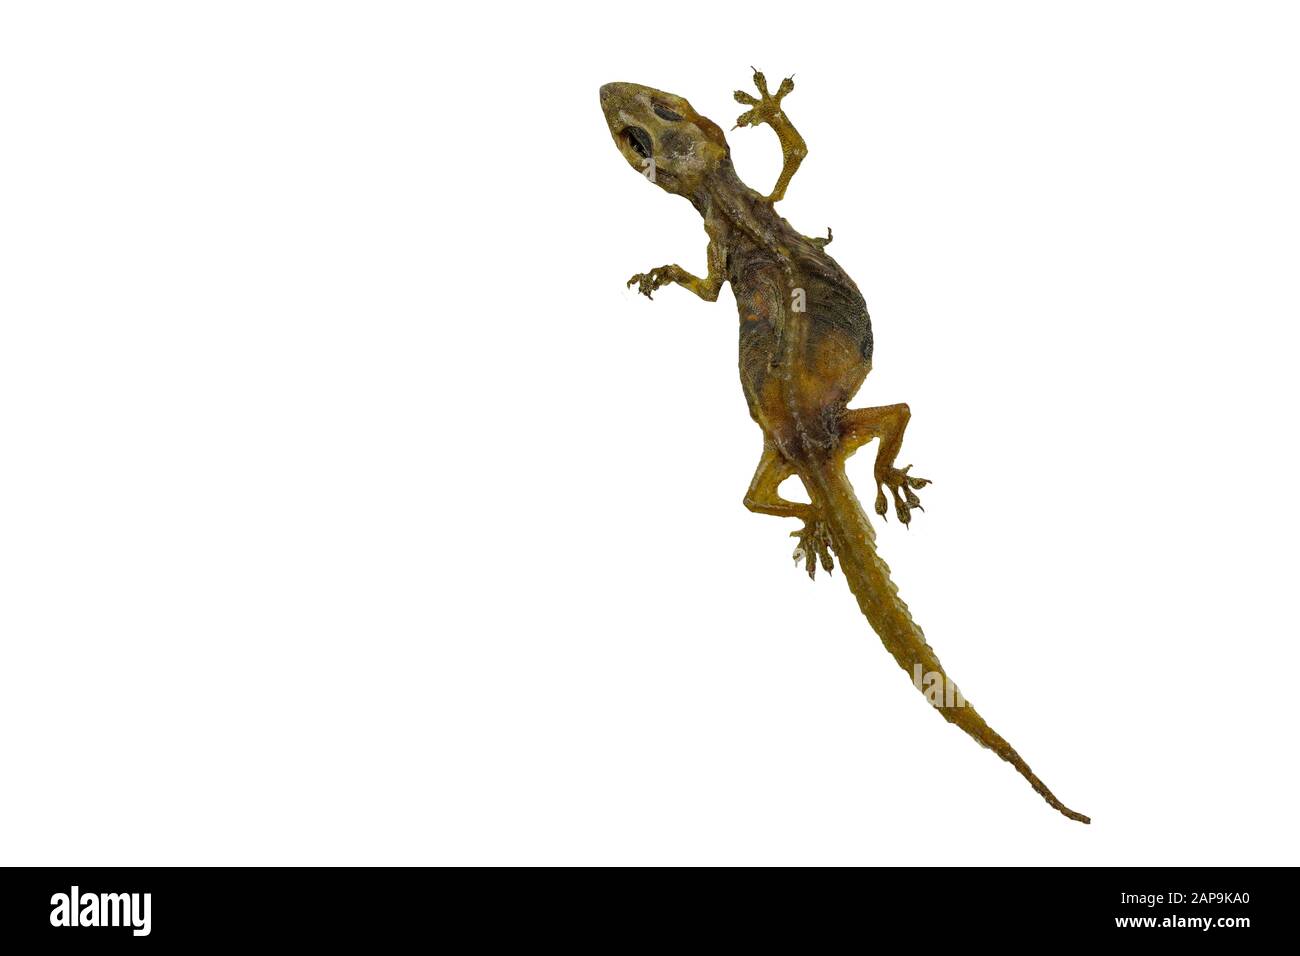 L'image d'un petit reptile appelé lézard Qui est mort pendant longtemps, jusqu'à ce que la peau soit sèche, laissant seulement les restes. Isoler sur le backgrou blanc Banque D'Images